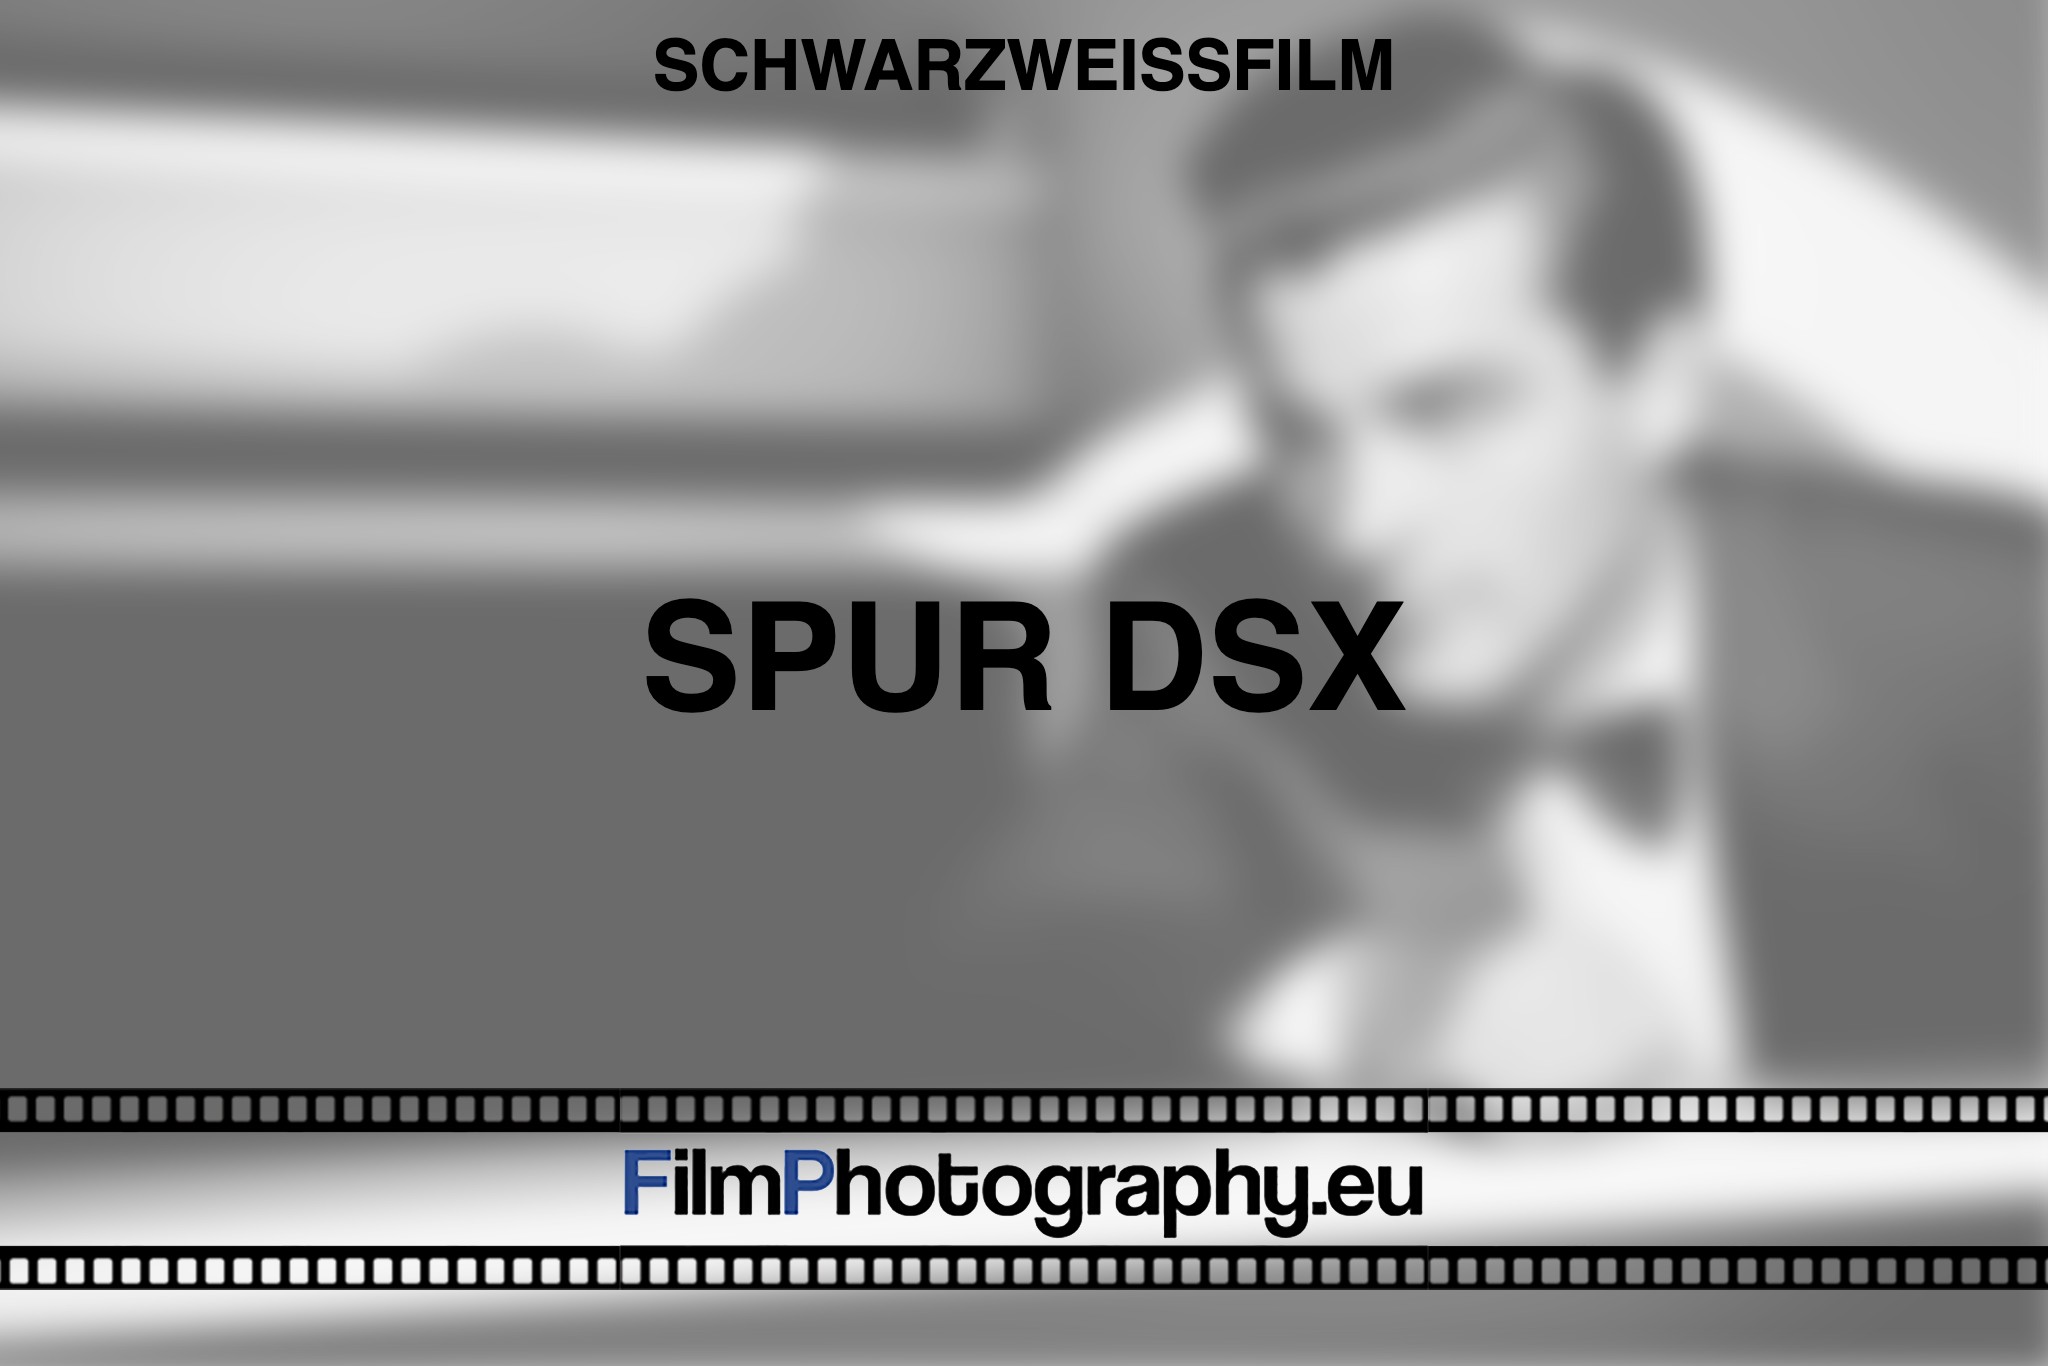 spur-dsx-schwarzweißfilm-bnv